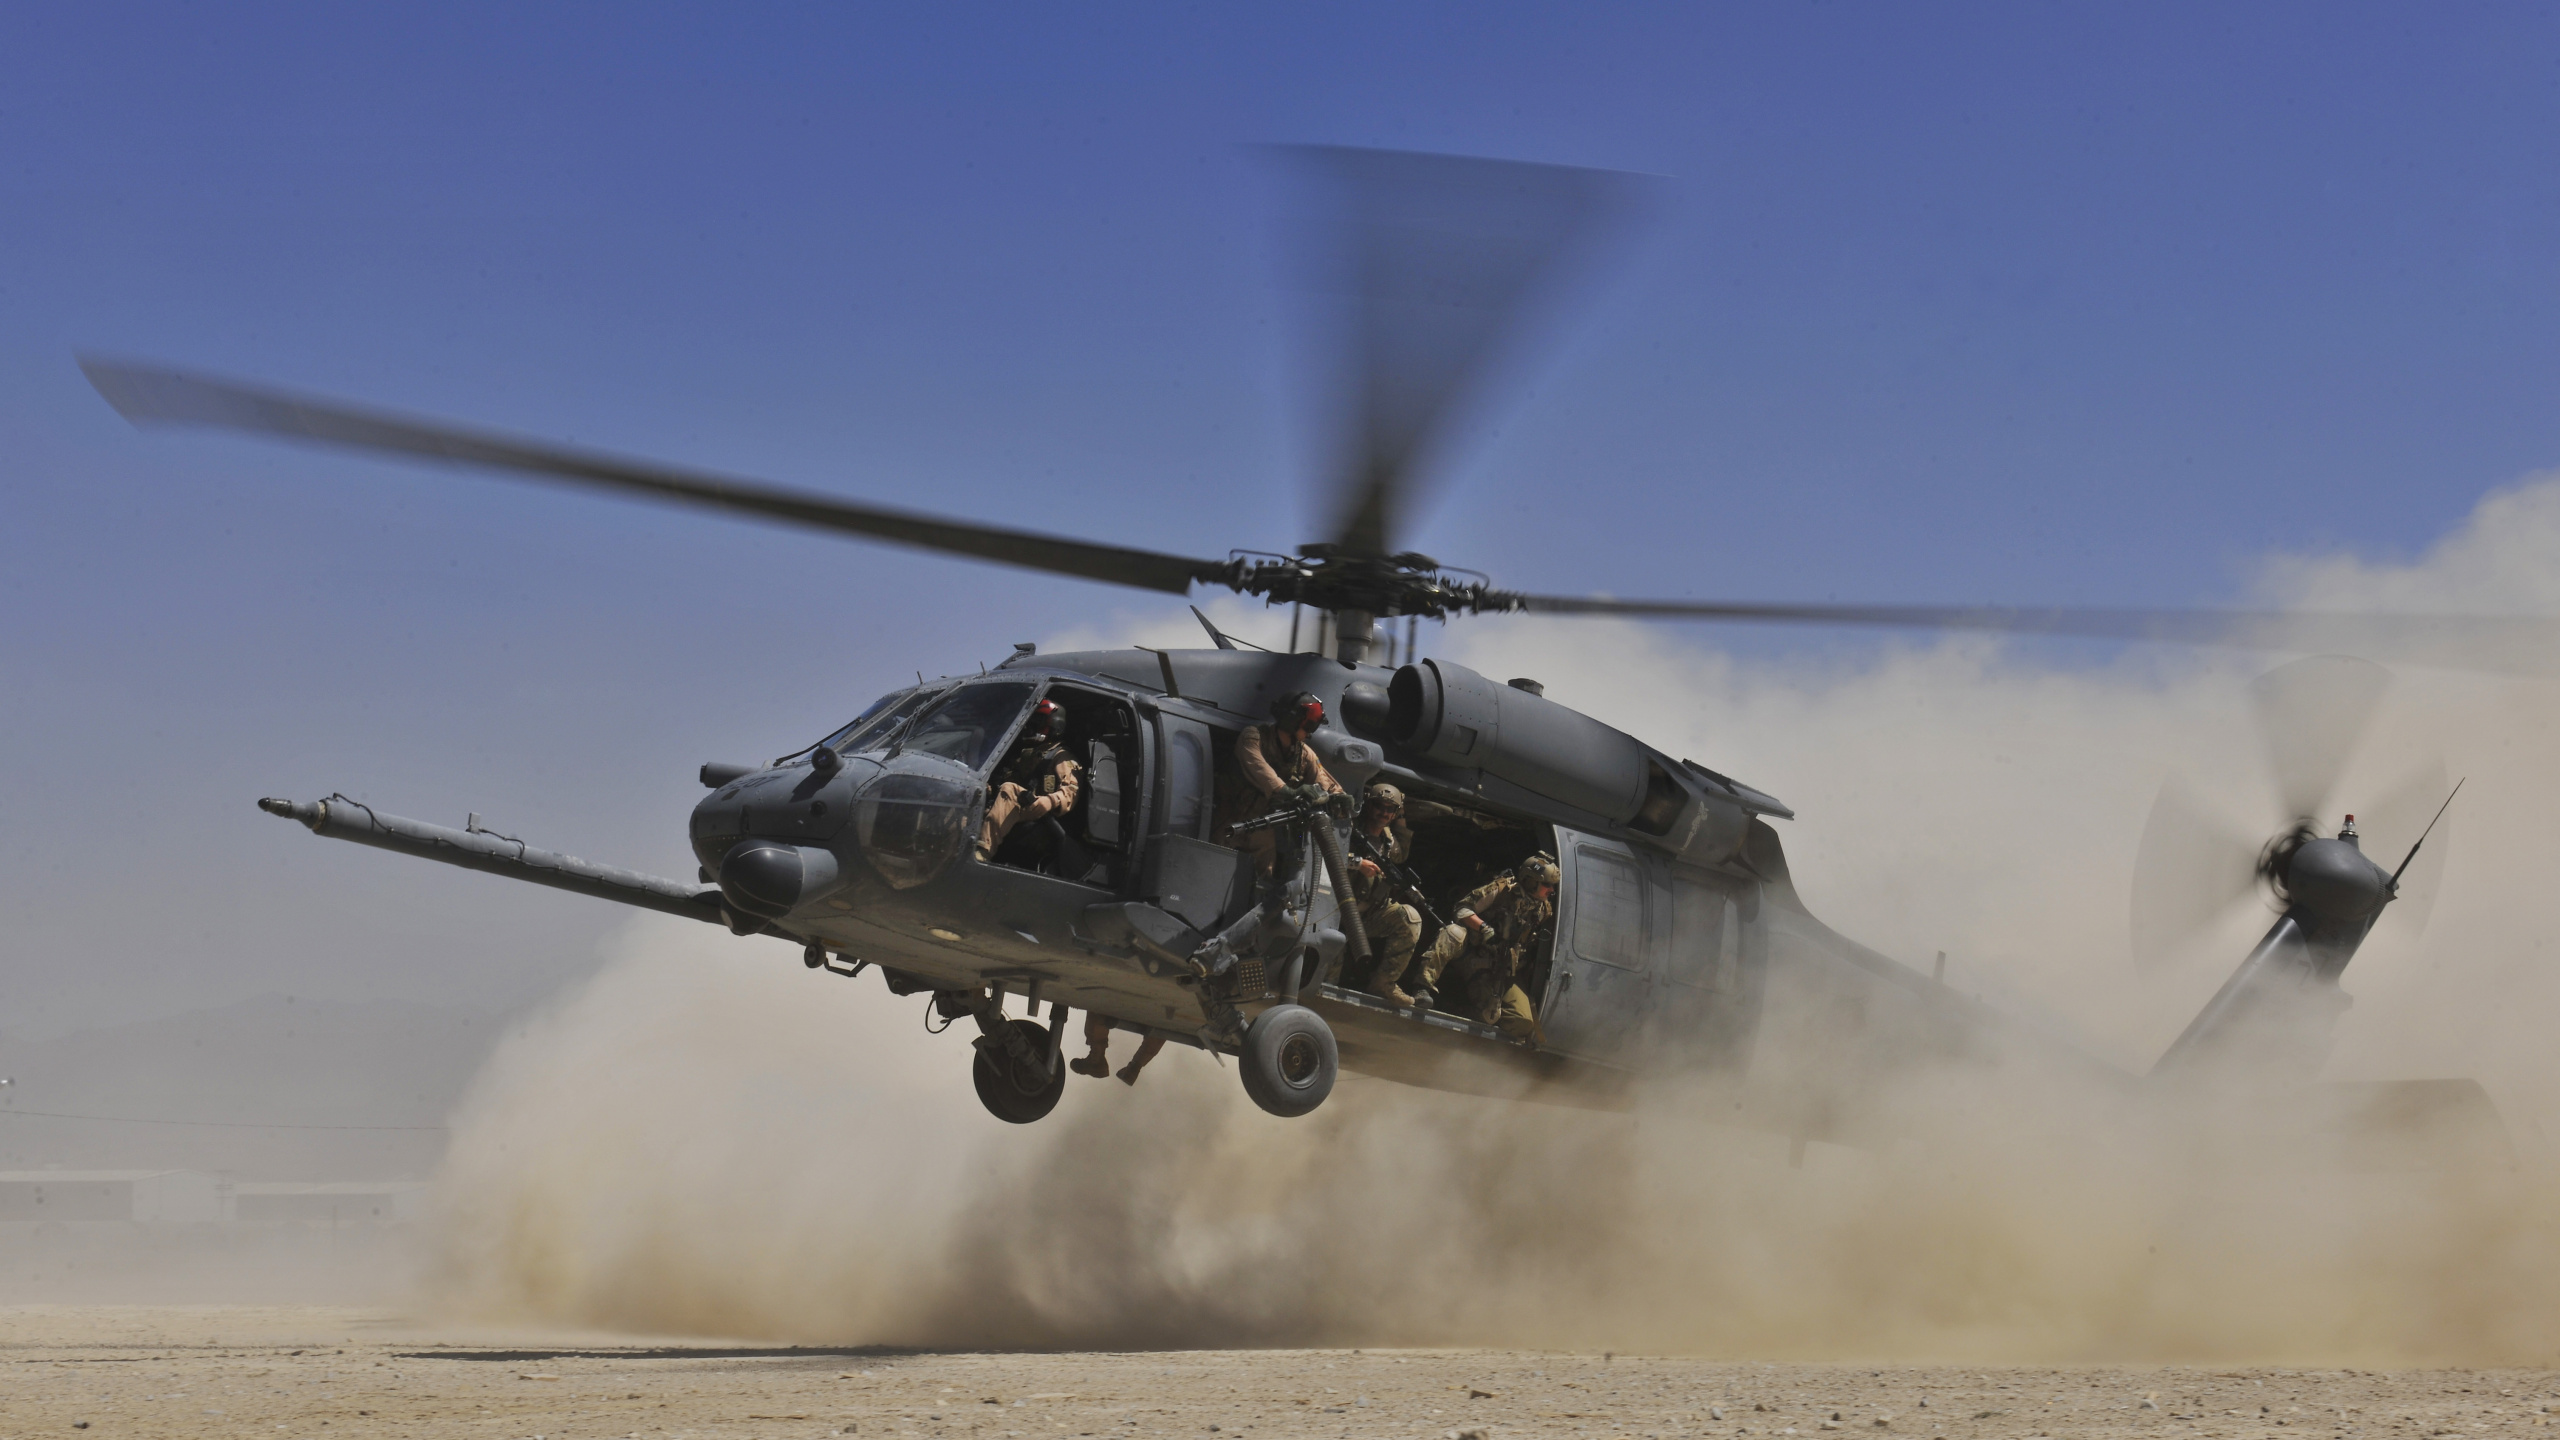 Helicóptero Negro en el Aire Durante el Día. Wallpaper in 2560x1440 Resolution